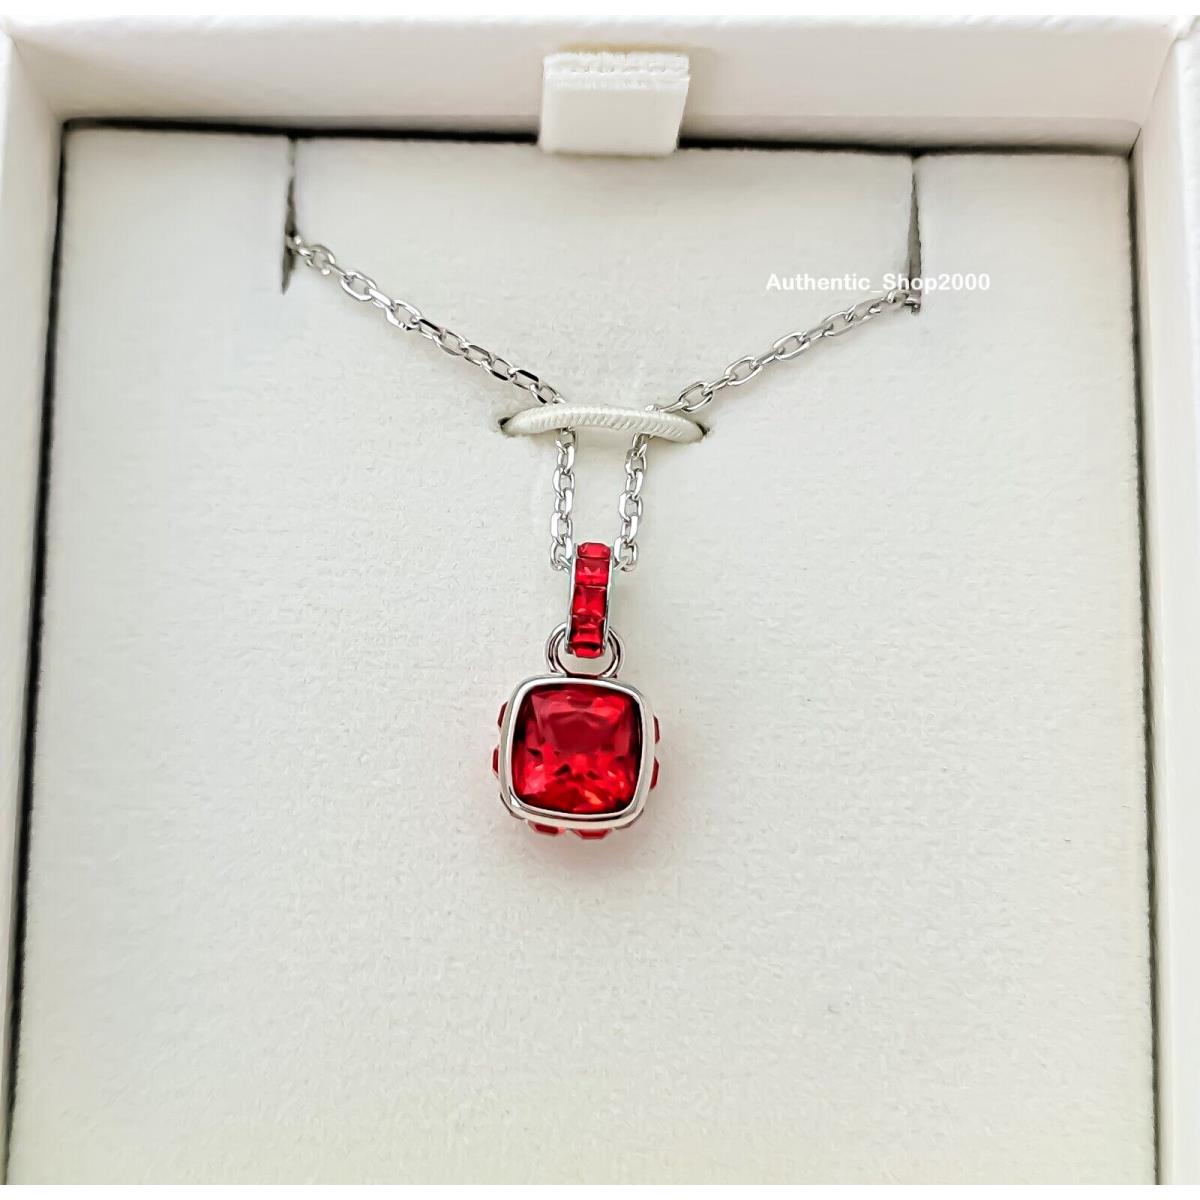 w Box Swarovski Red Crystal July Birthstone Pendant Jewelry Necklace 5652043